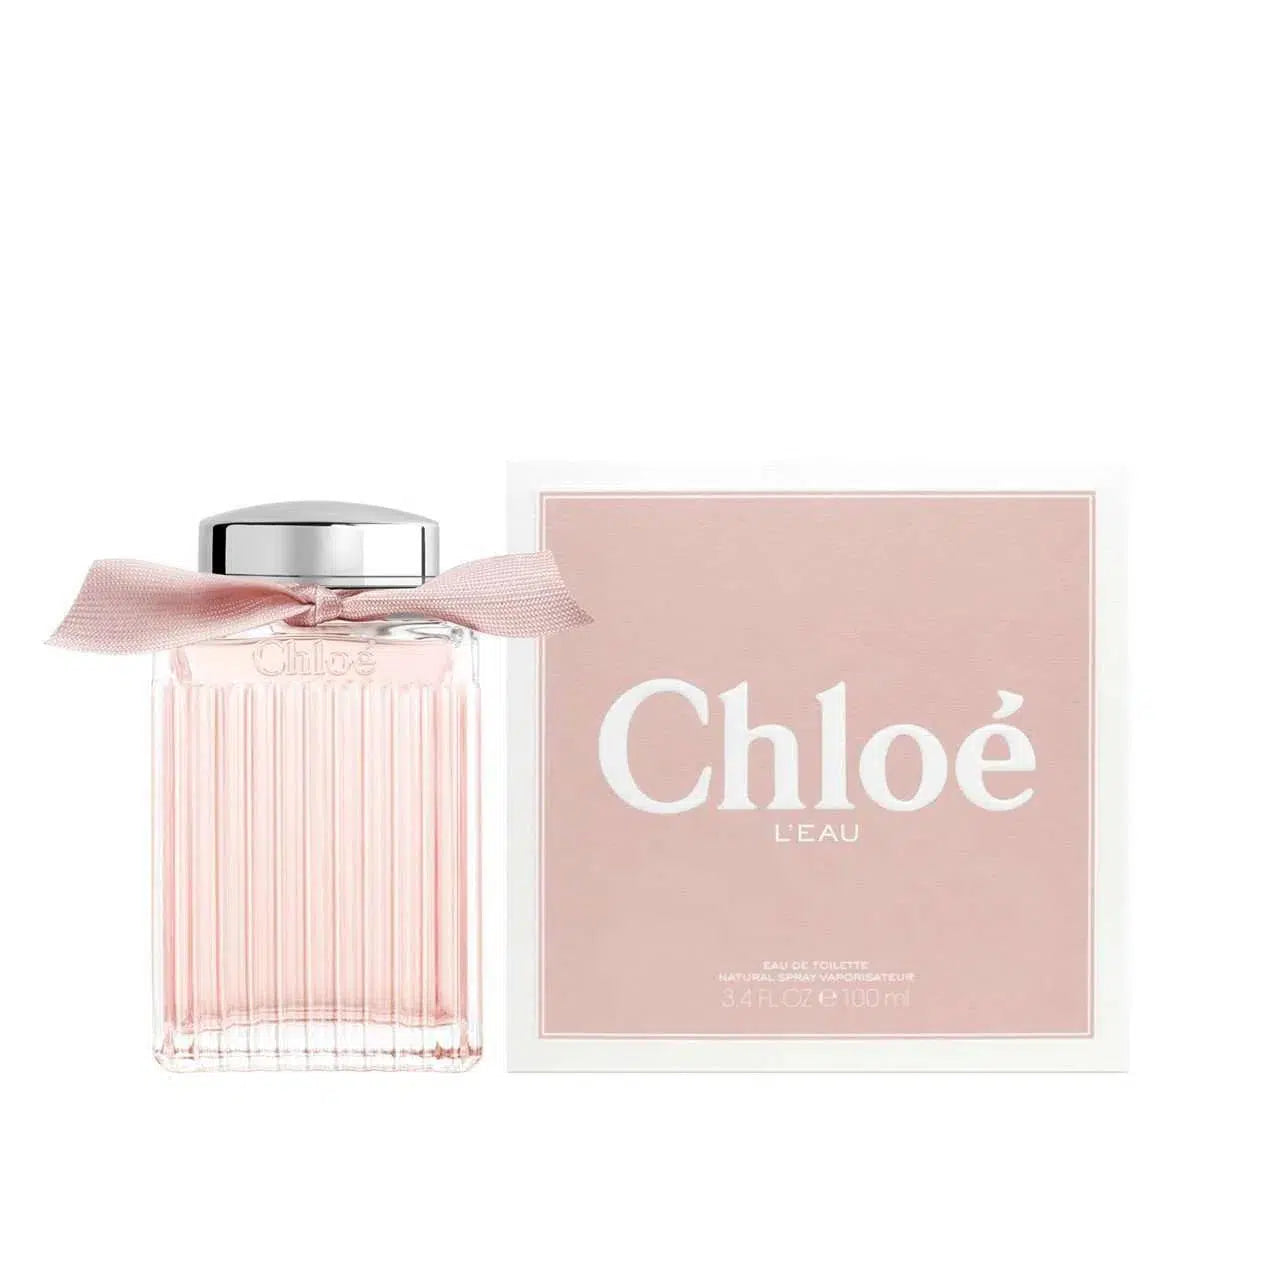 Chloe-Chloe Leau EDT 100ml-Fragrance